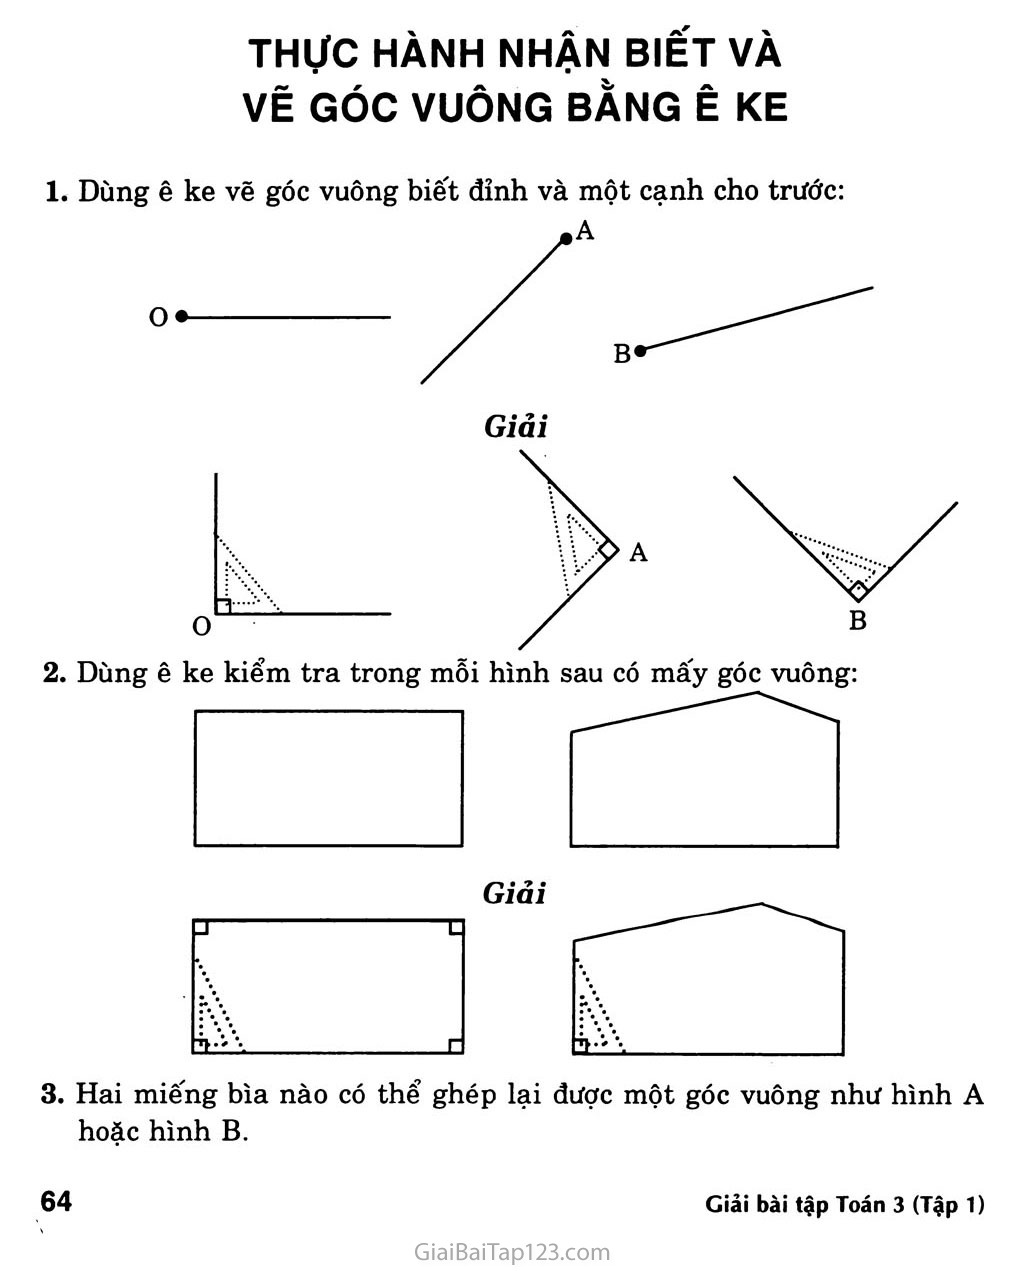 Giải bài tập Toán lớp 3: Thực hành nhận biết và vẽ góc vuông bằng ê ke